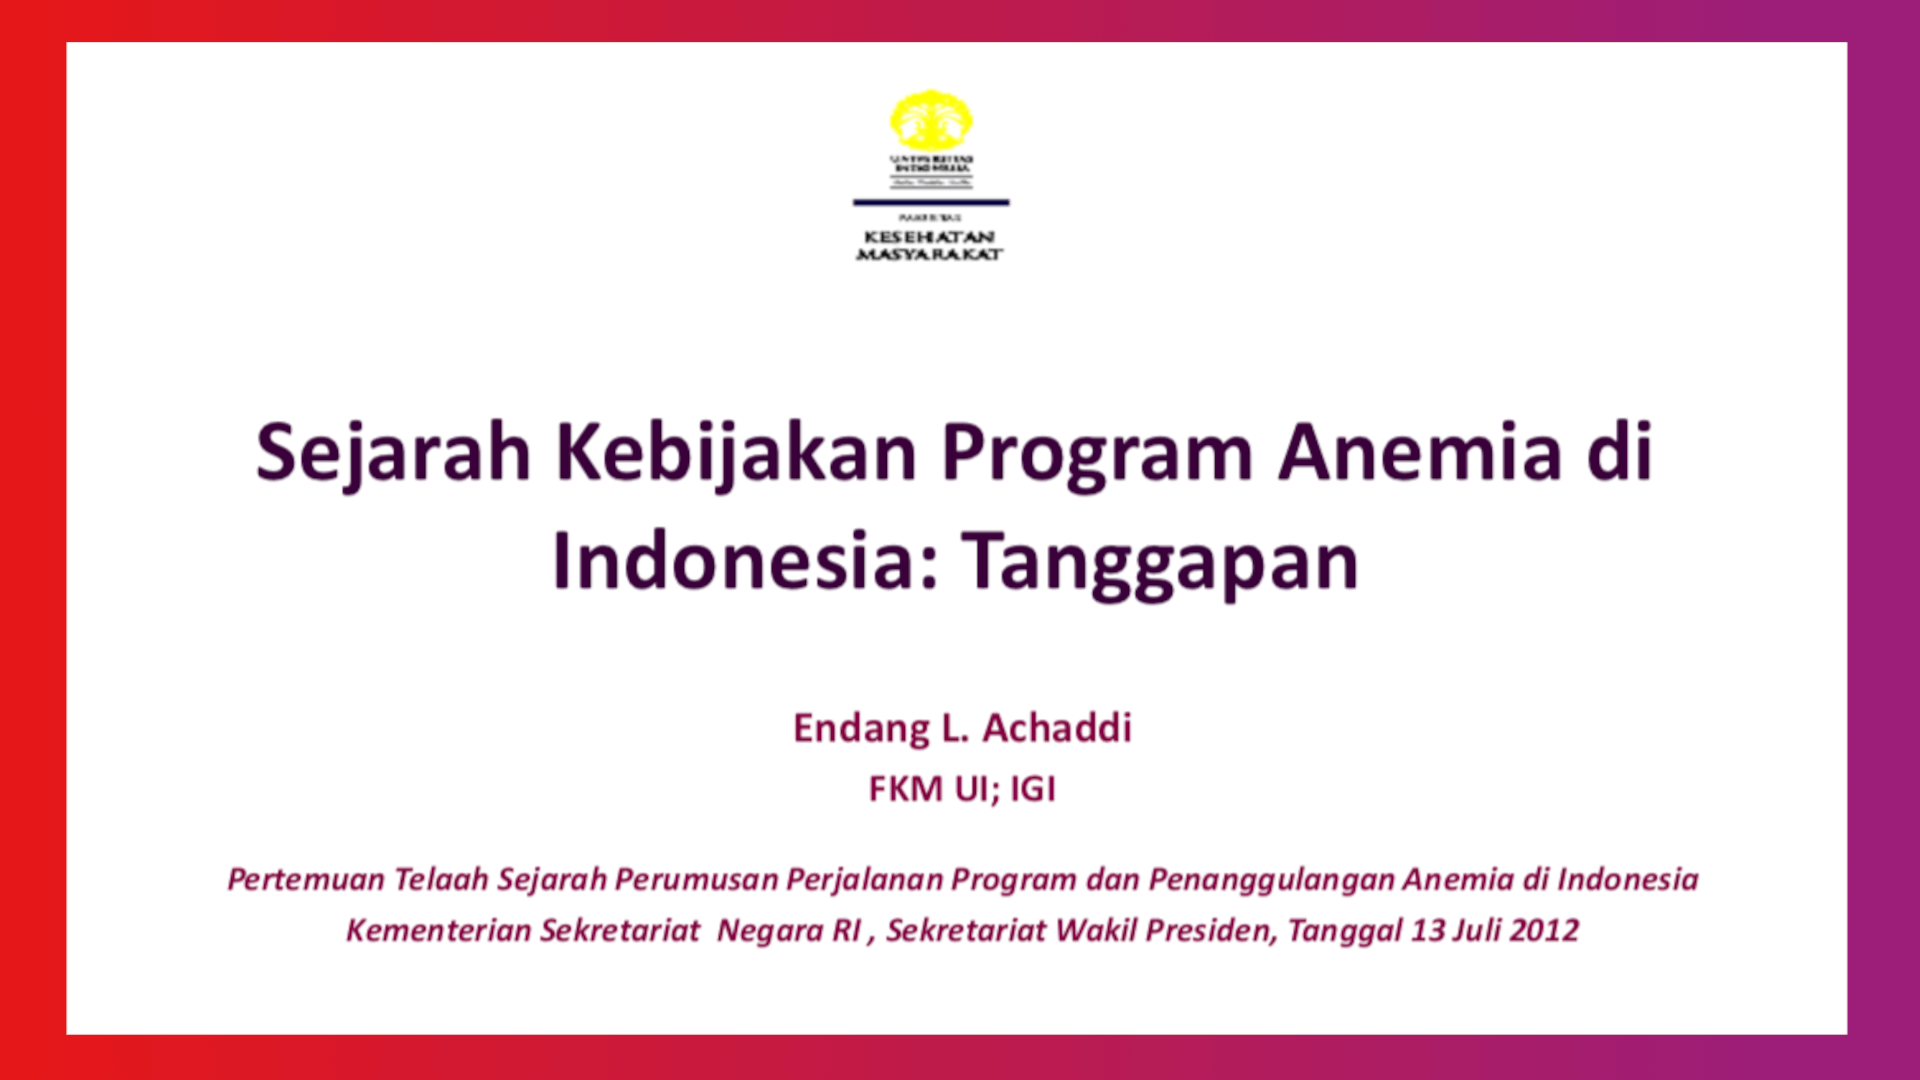 Sejarah Kebijakan Program Anemia di Indonesia: Pembahasan – Endang L. Achaddi